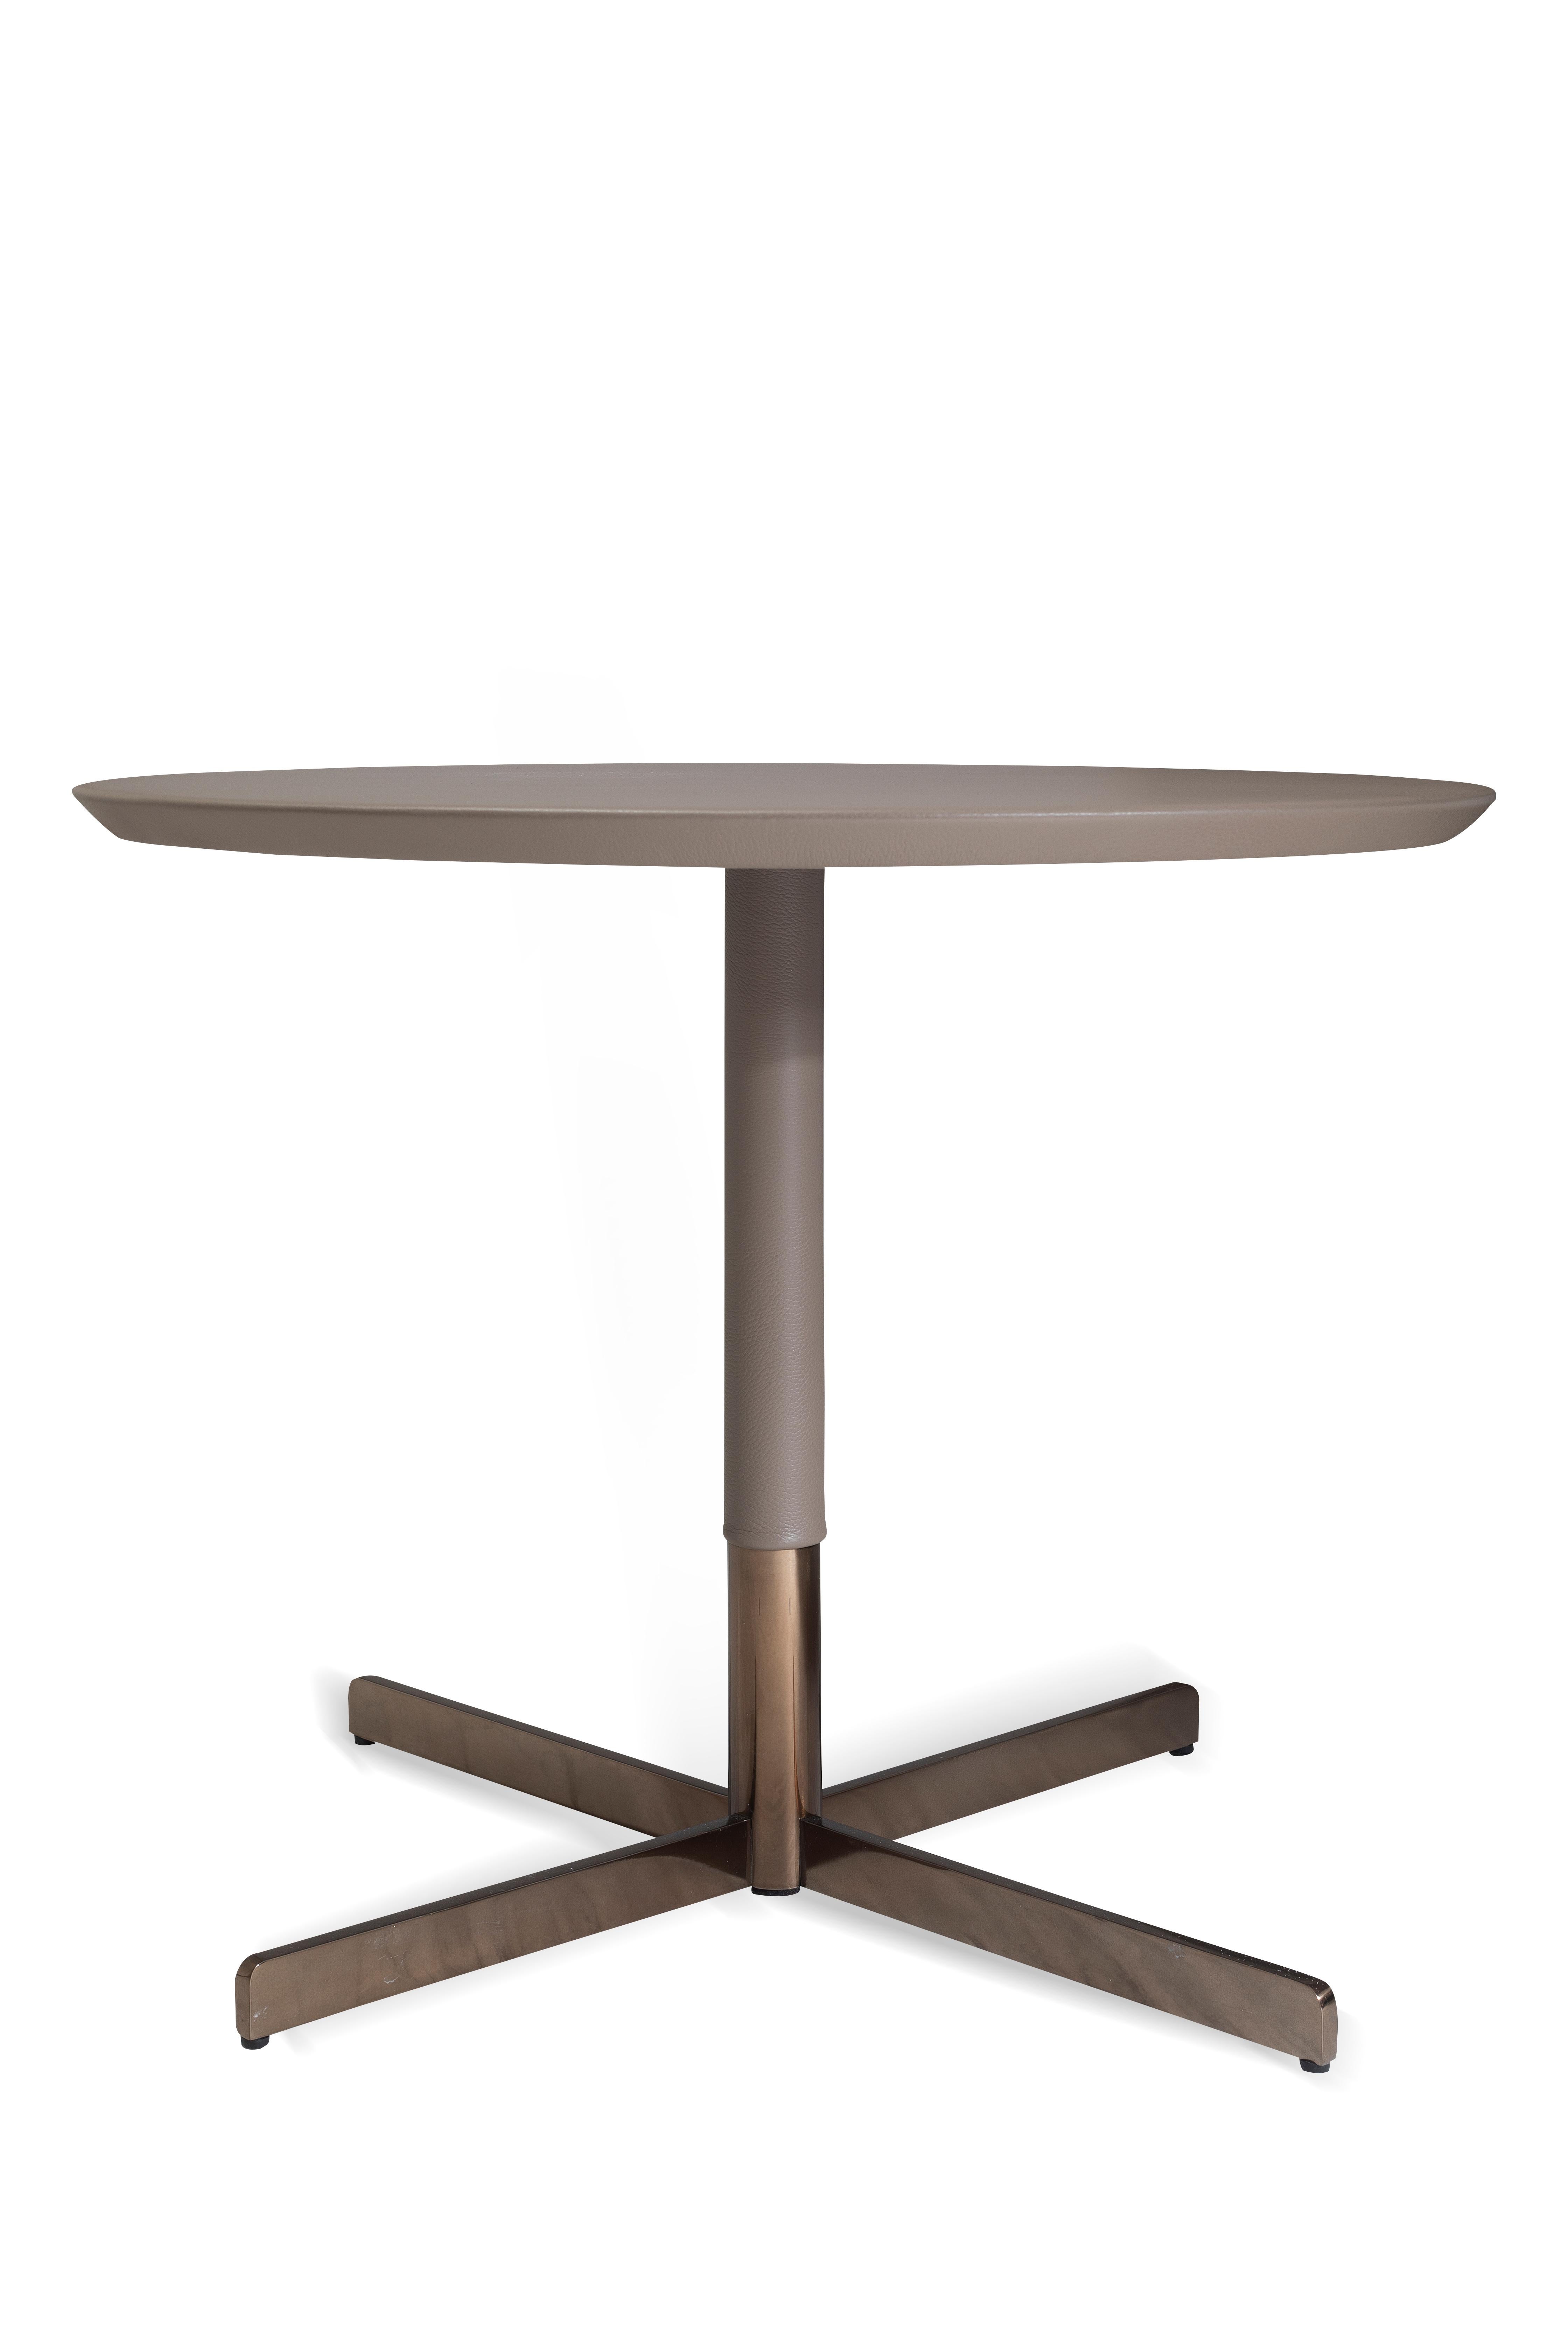 Leatherella est une table basse chic et épurée, enveloppée de cuir italien et posée sur des pieds en métal noble pour donner une touche de sophistication. Placez-la à côté d'un canapé ou d'un fauteuil pour créer une pièce acceptable dans un salon,